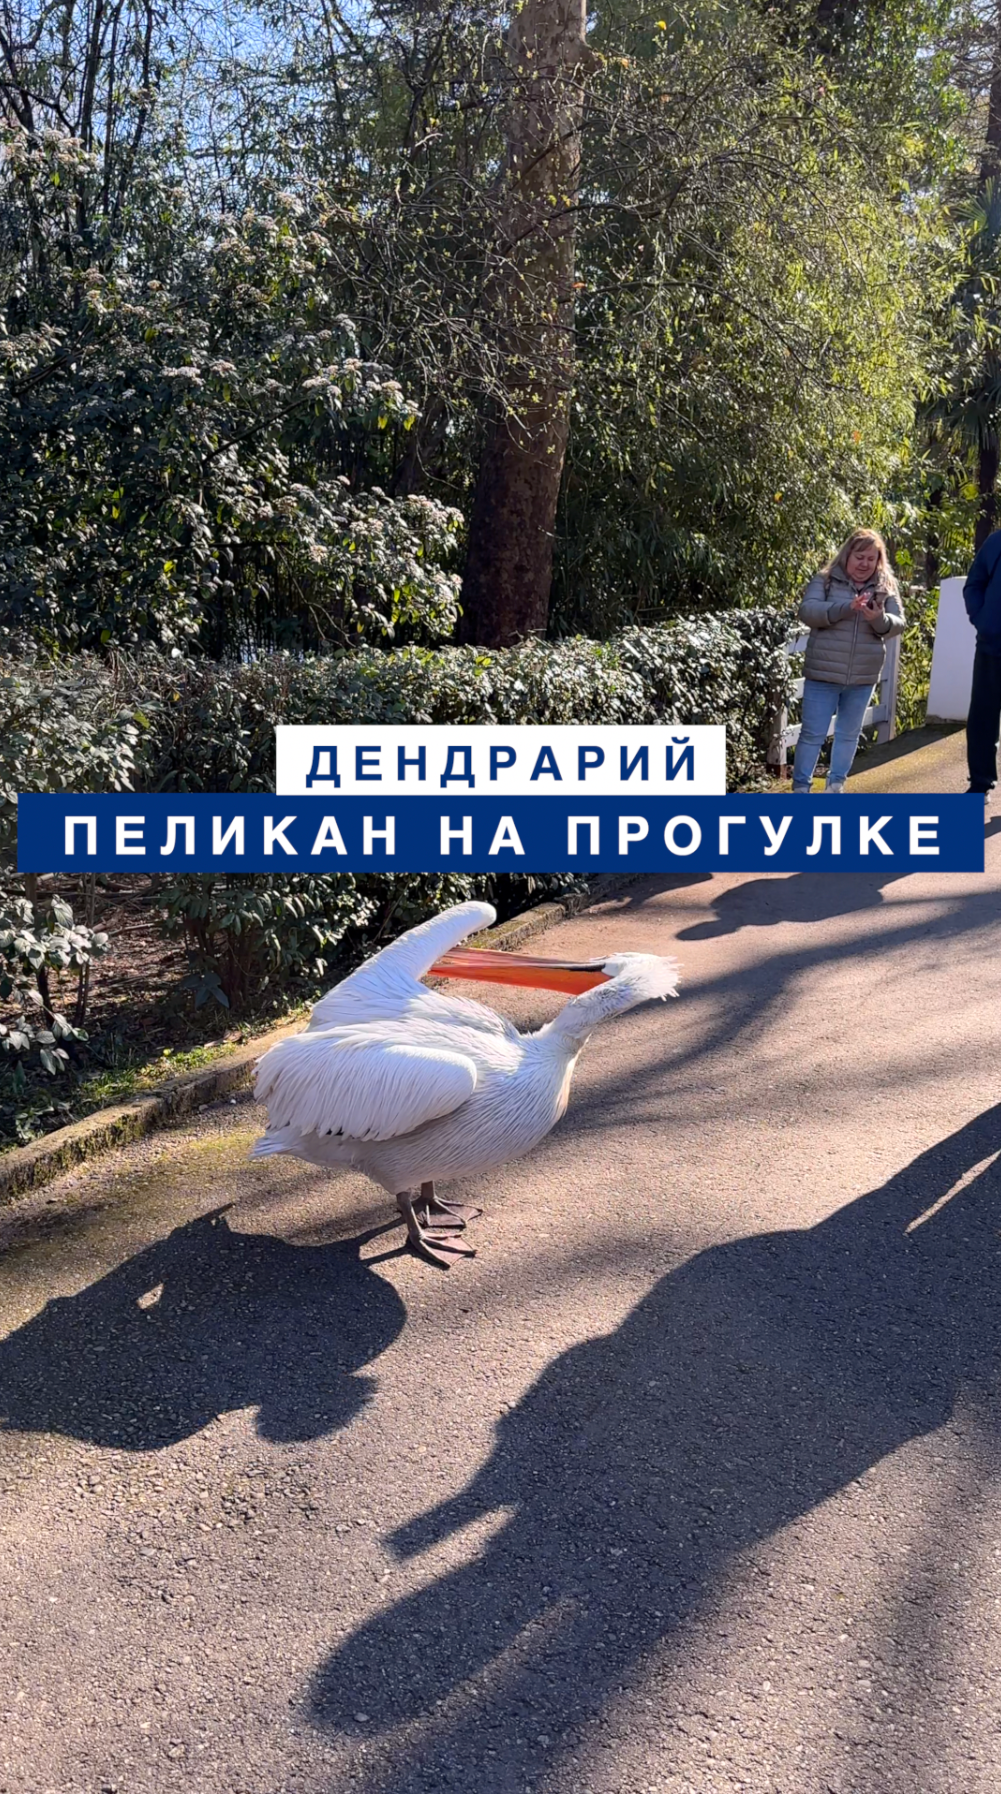 Пеликан на прогулке в Сочинском Дендрарии чуть было не съел телефон у любопытного блогера.